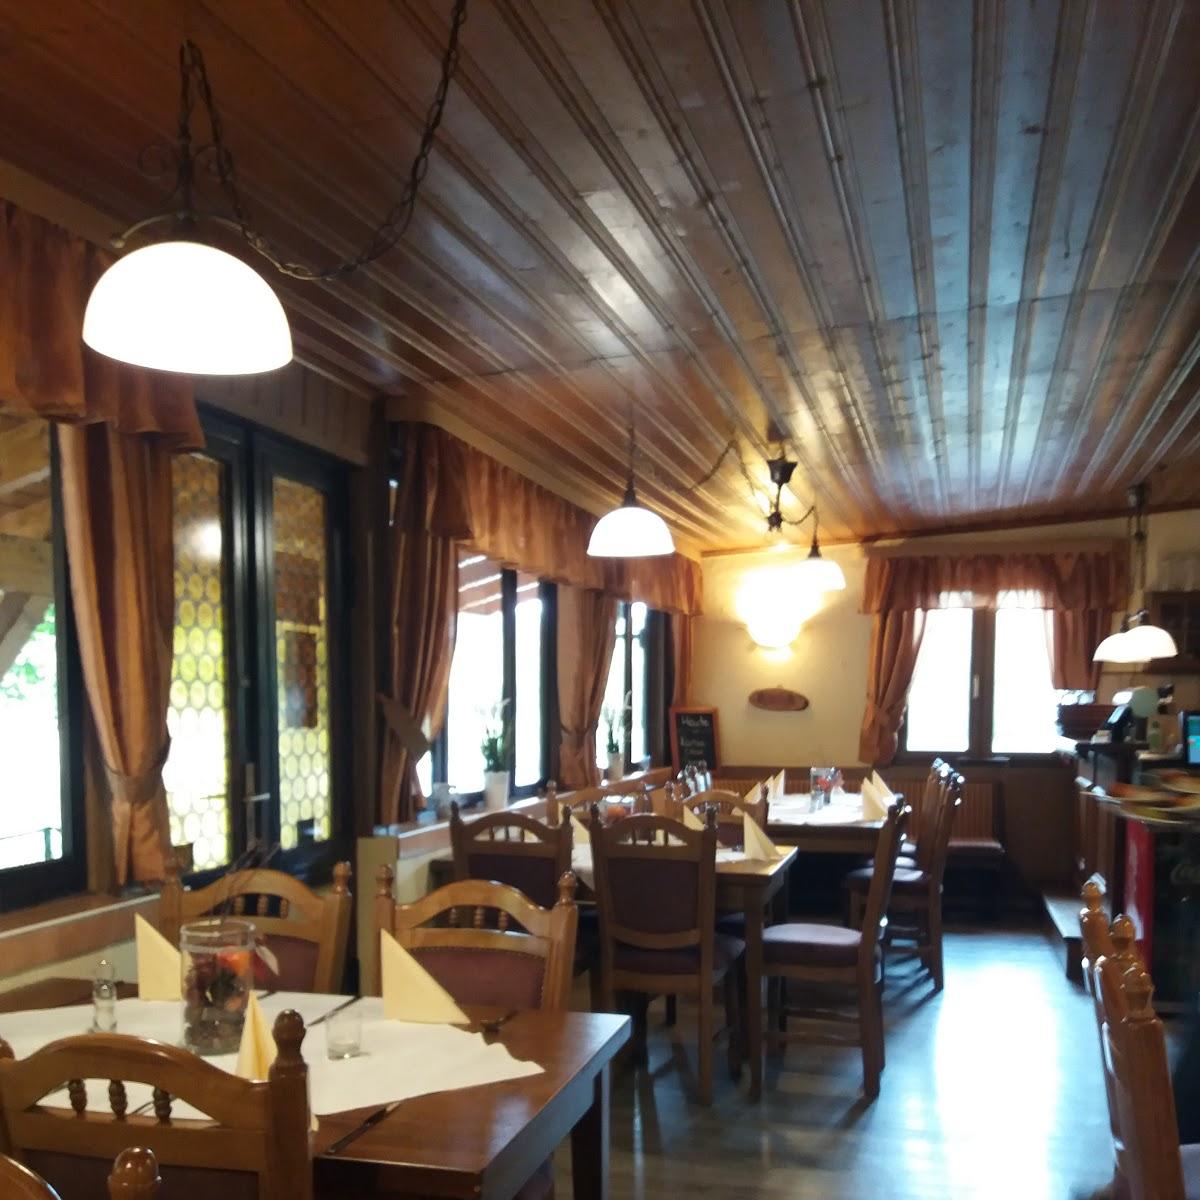 Restaurant "Waldgaststätte Cleric" in Kindelbrück